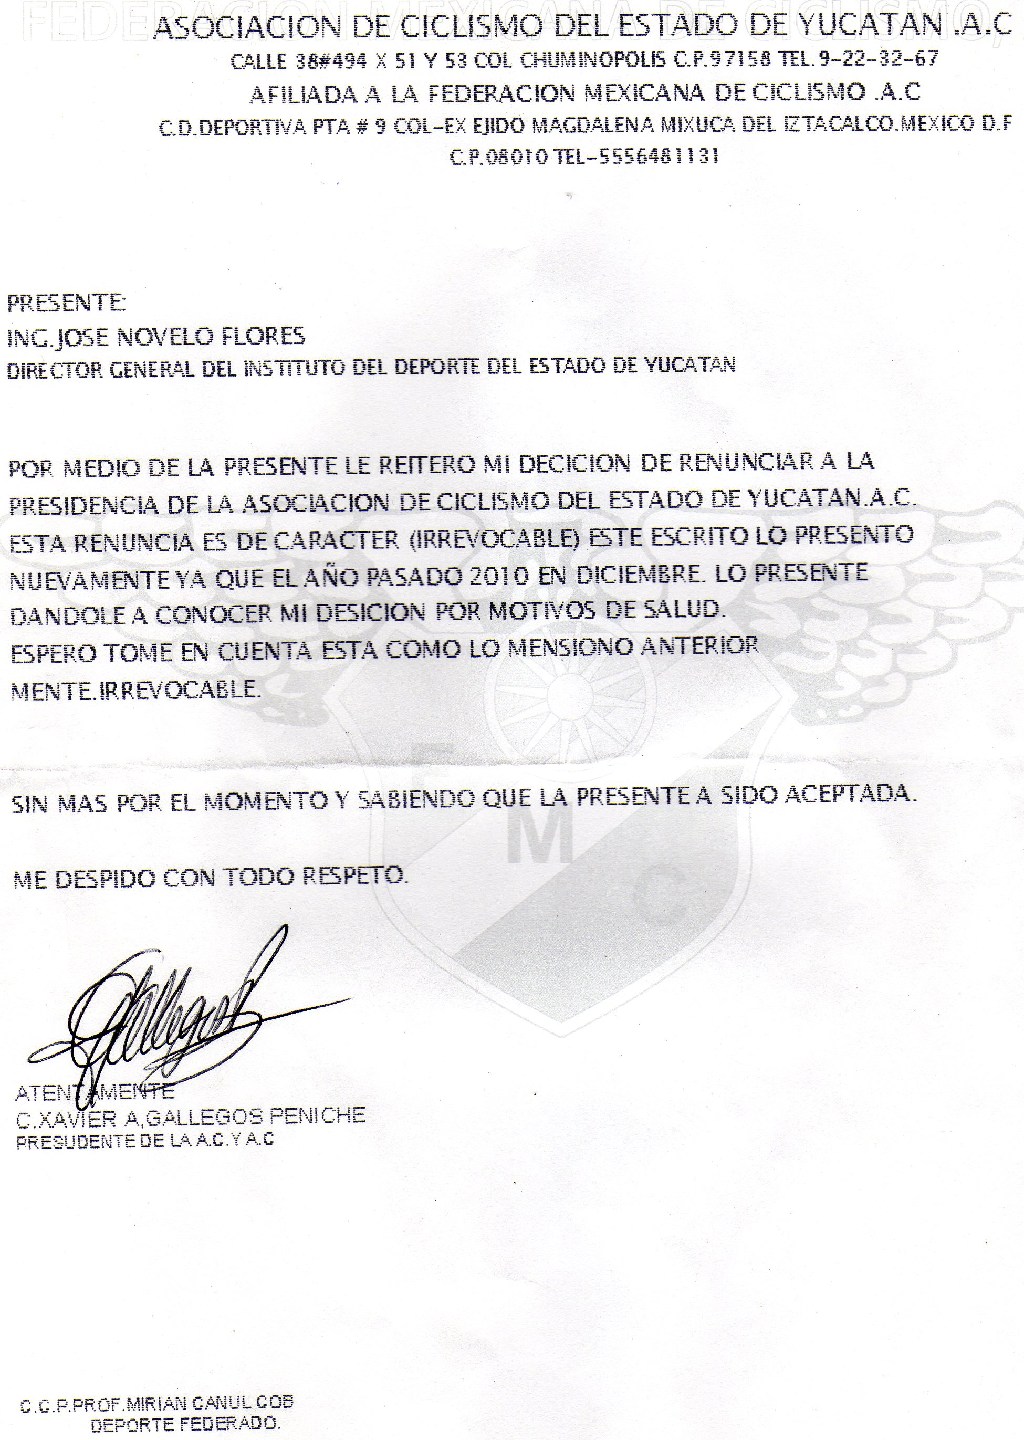 Ratificacion de renuncia de Xavier Antonio Gallegos ante 